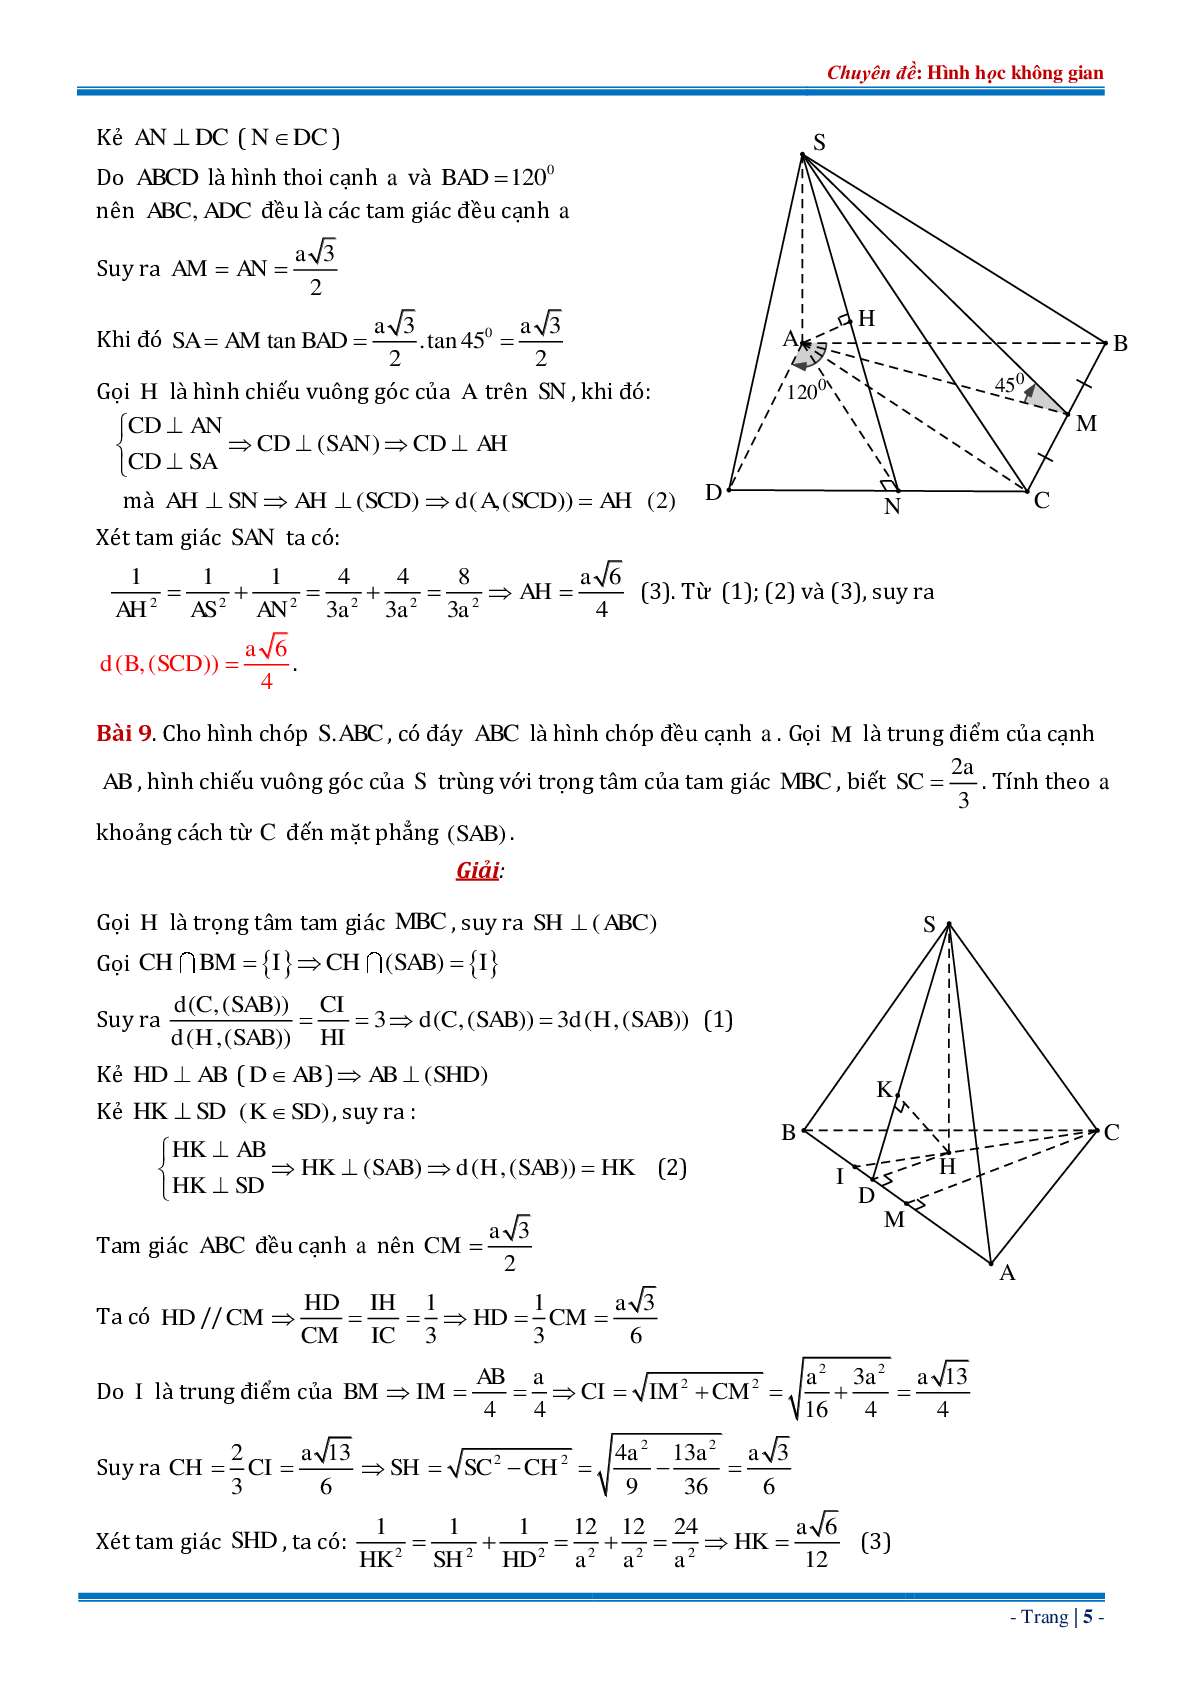 18 bài tập về khoảng cách từ điểm đến mặt phẳng dạng tổng hợp có đáp án chi tiết (trang 5)